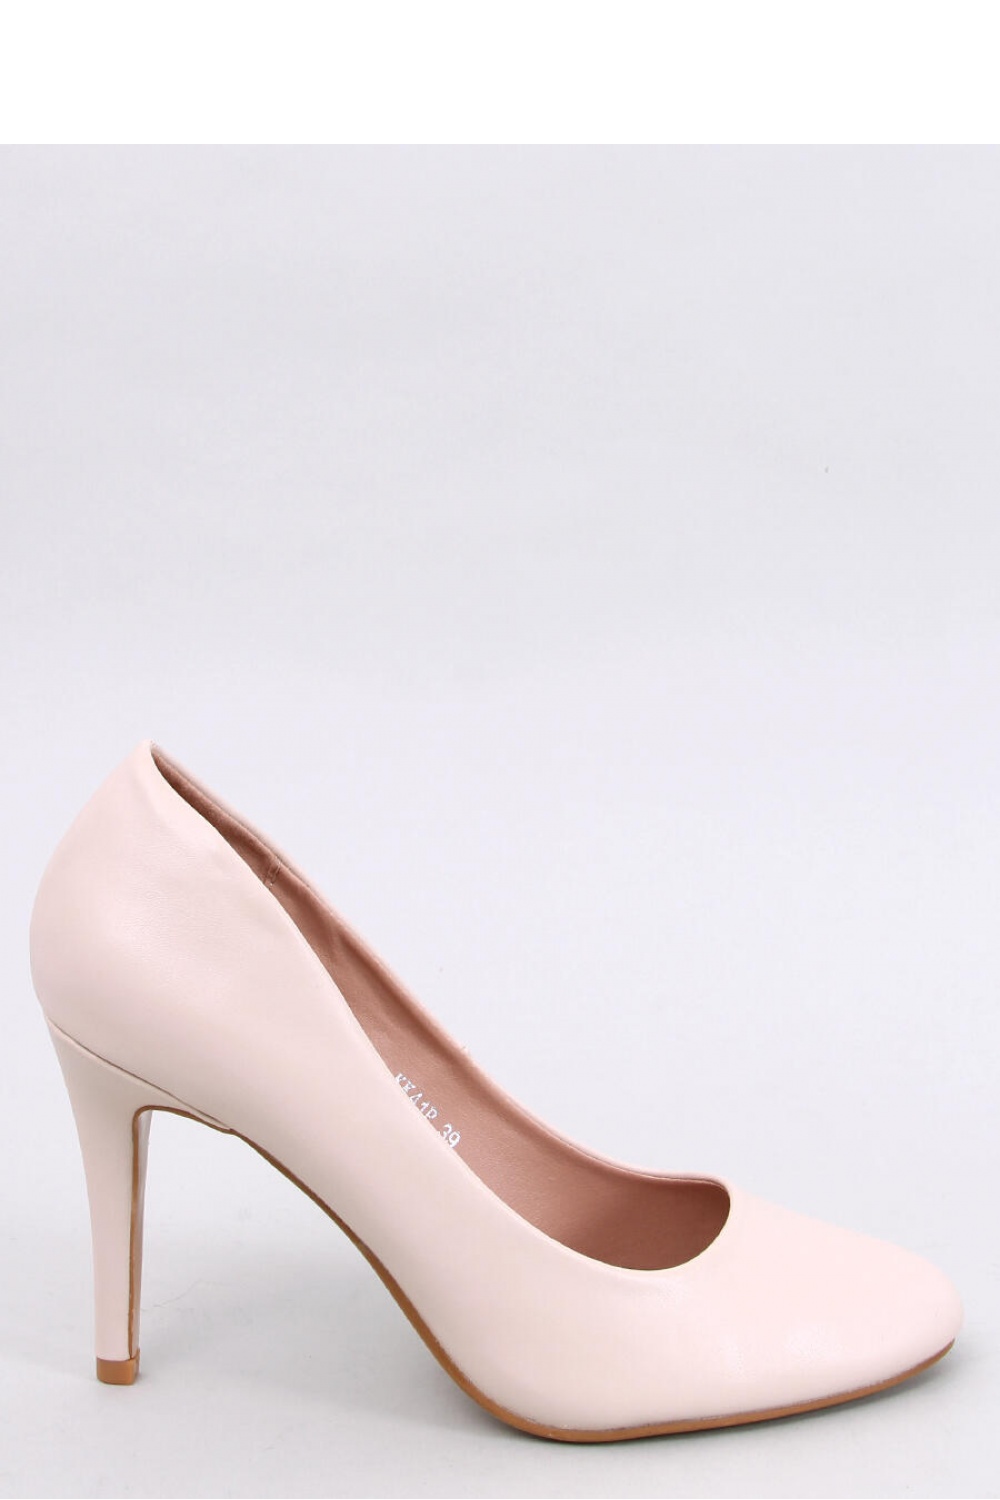 High heels model 188751 Inello